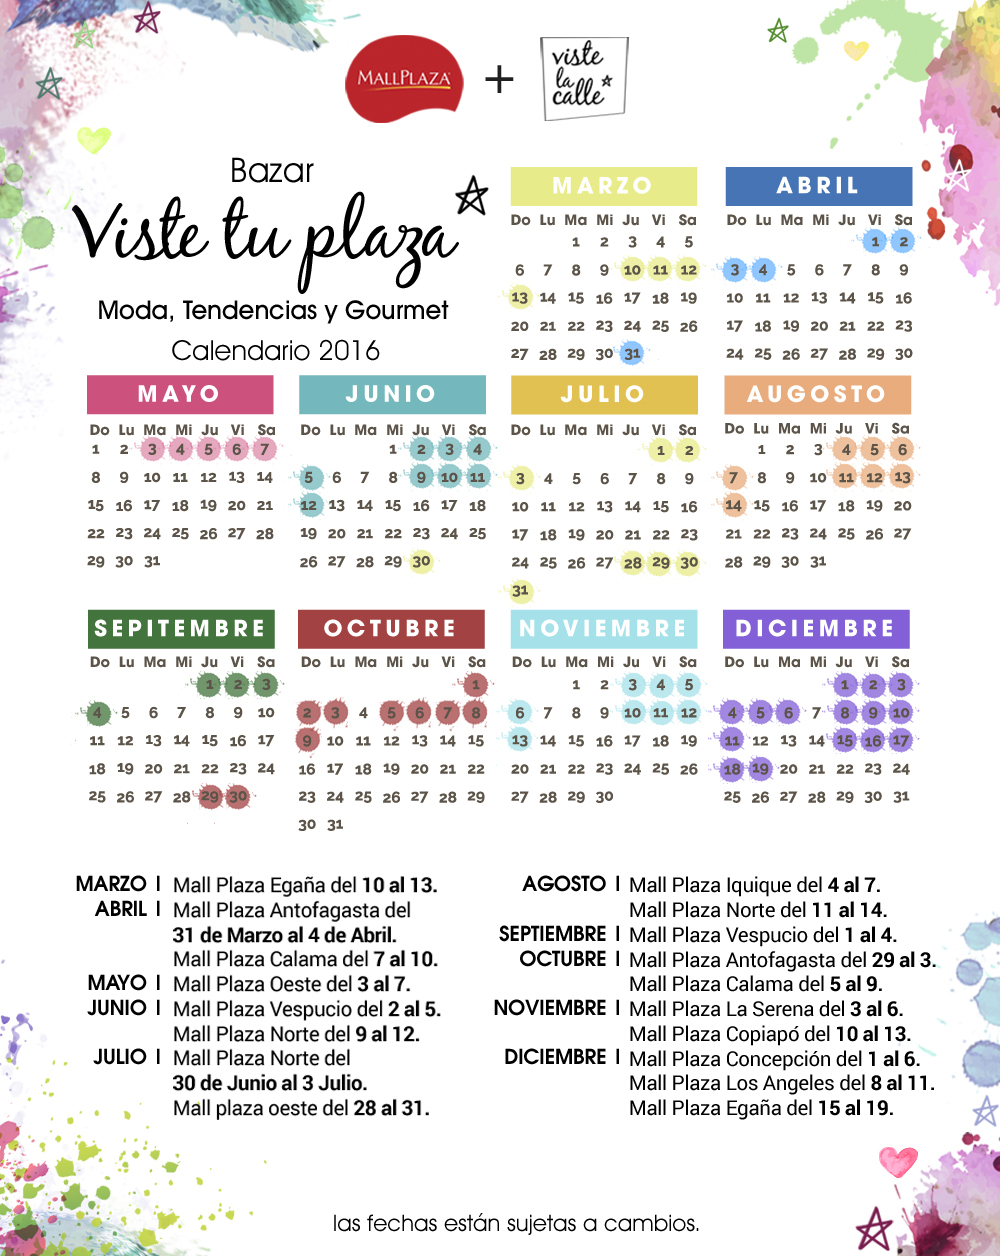 Agenda la fecha VisteTuPlaza en tu ciudad con el calendario 2016 de nuestro recorrido por los Mall Plaza del país